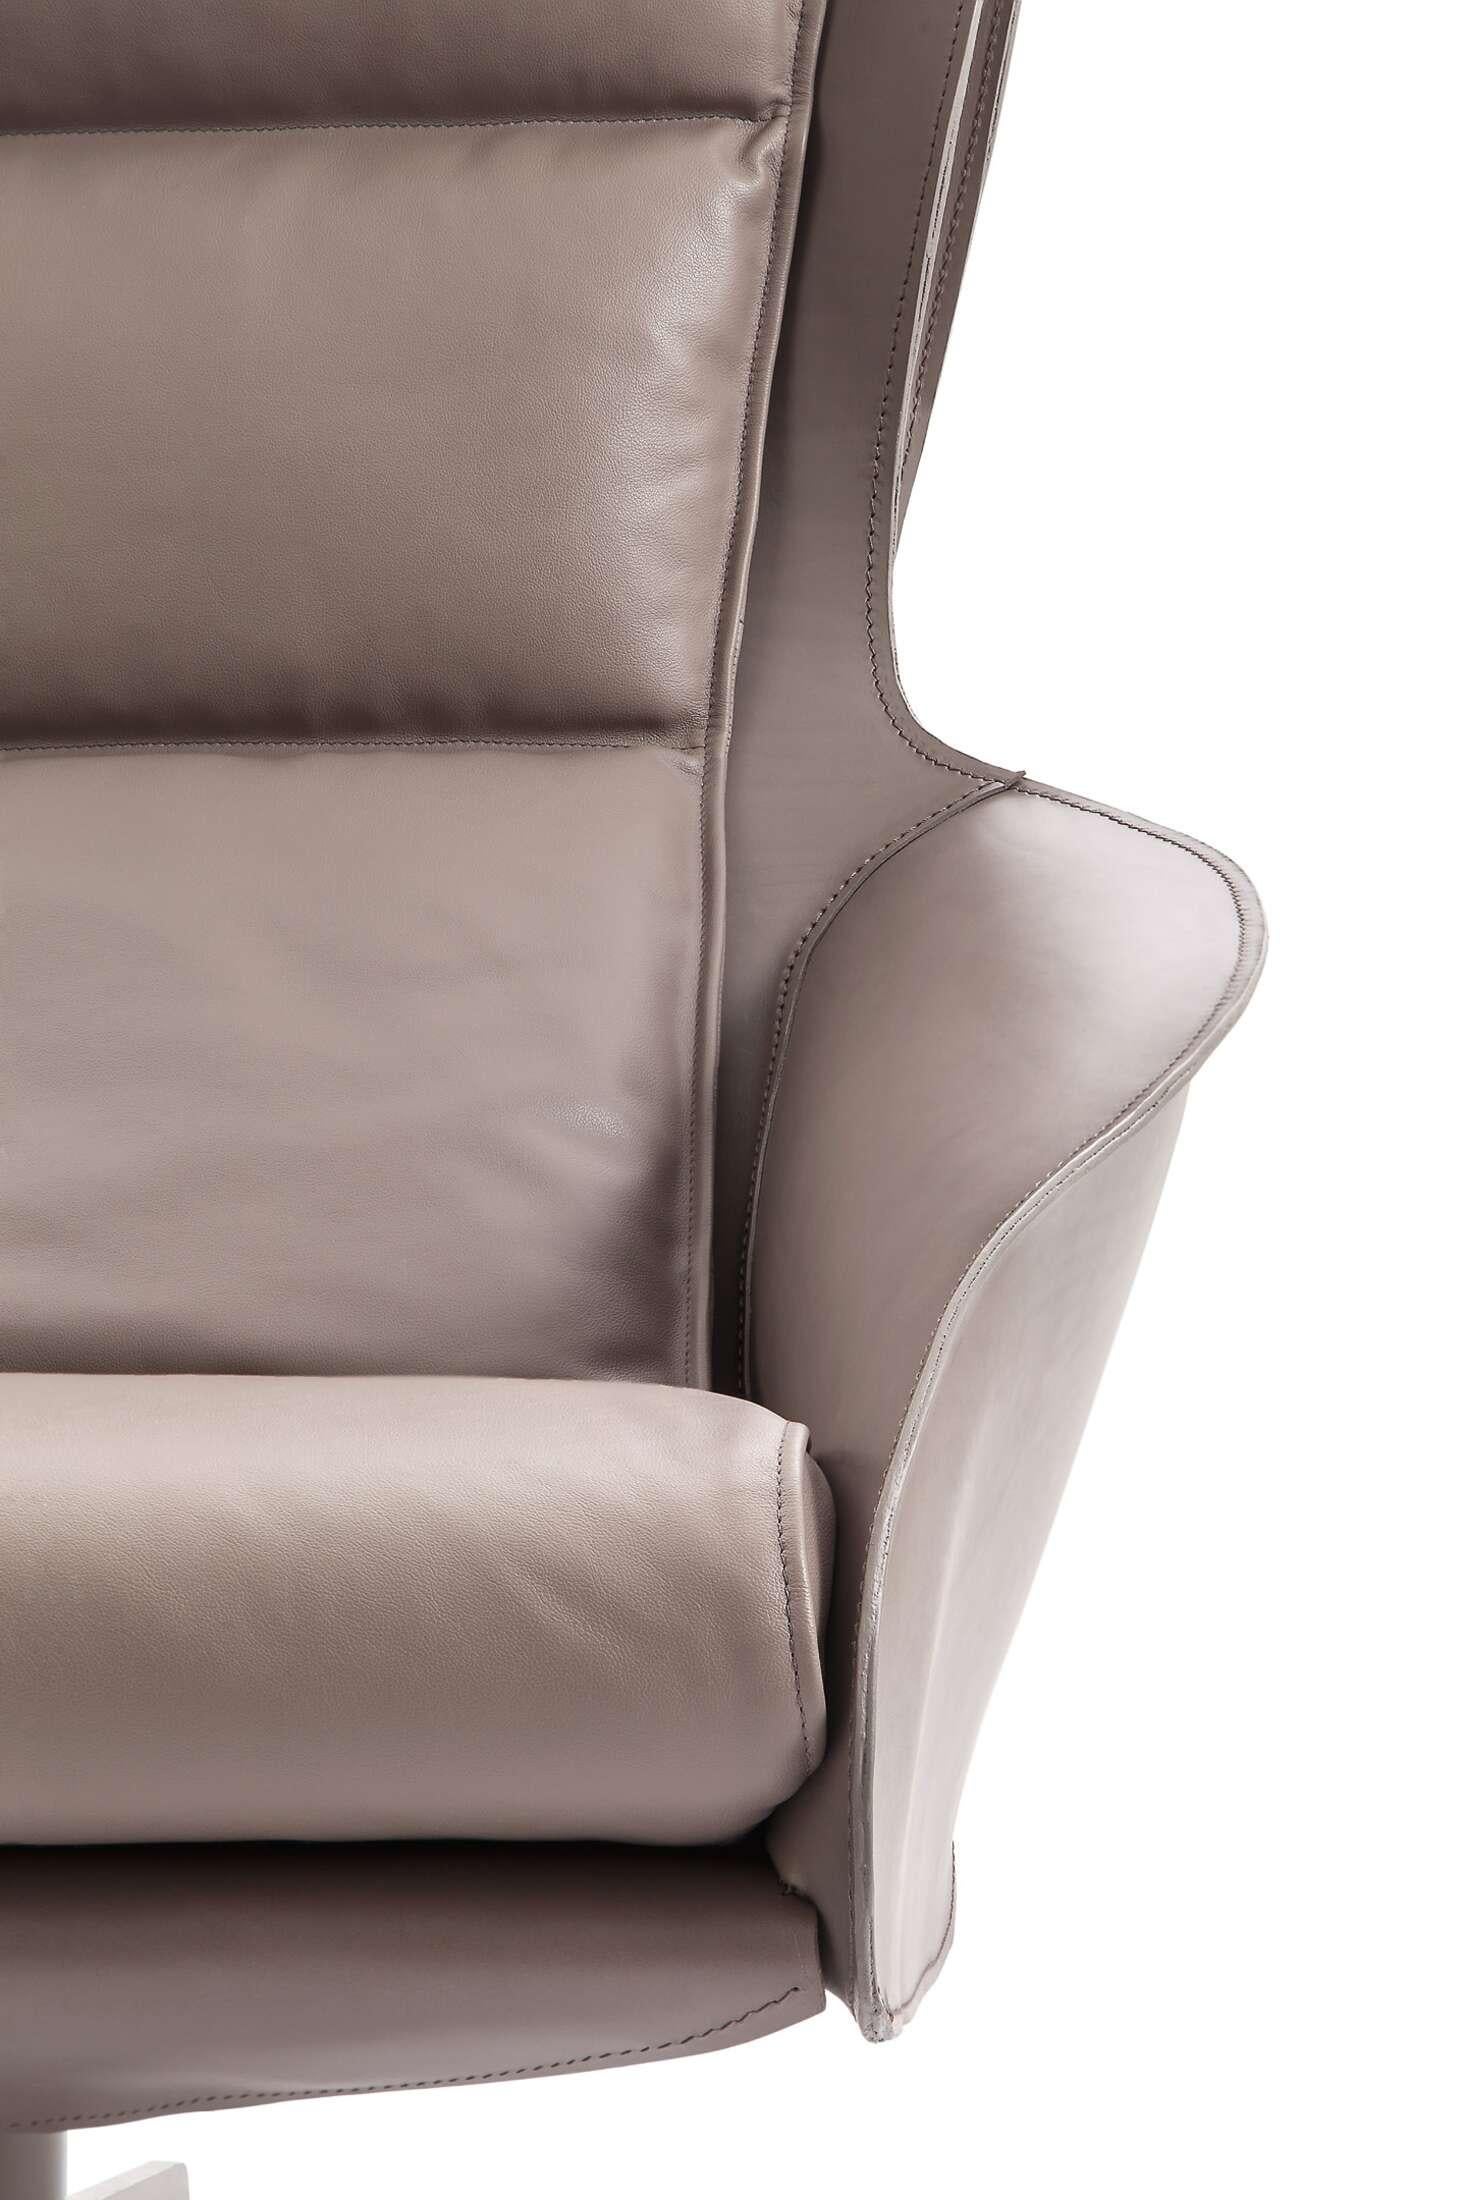 Chaise longue conçue par Mario Bellini en 2015. Fabriqué par Cassina en Italie. Le prix est par pièce. Veuillez demander le prix pour d'autres matériaux et couleurs.